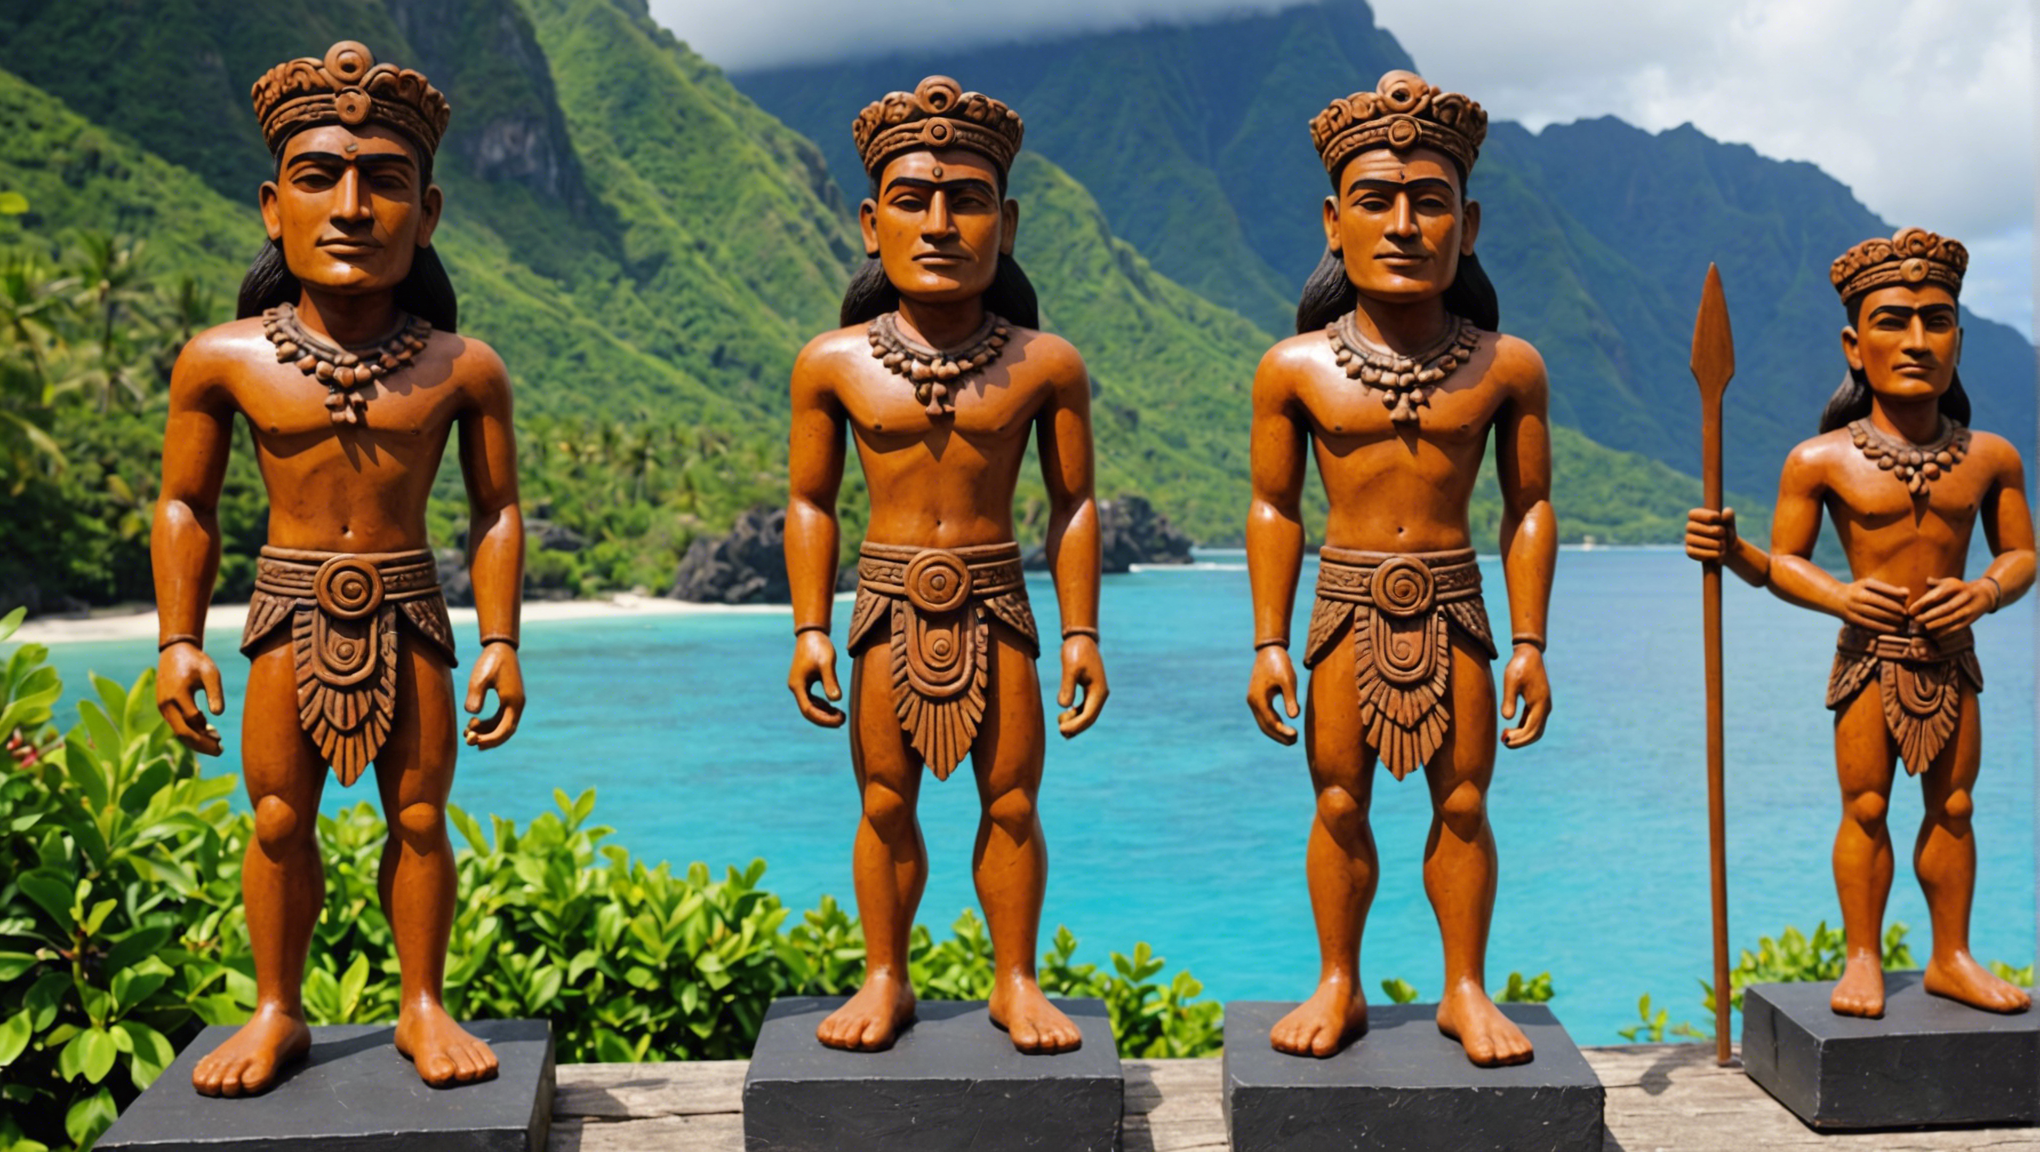 découvrez les trésors artistiques de tahiti en peinture et sculpture polynésienne à travers une exploration culturelle captivante.